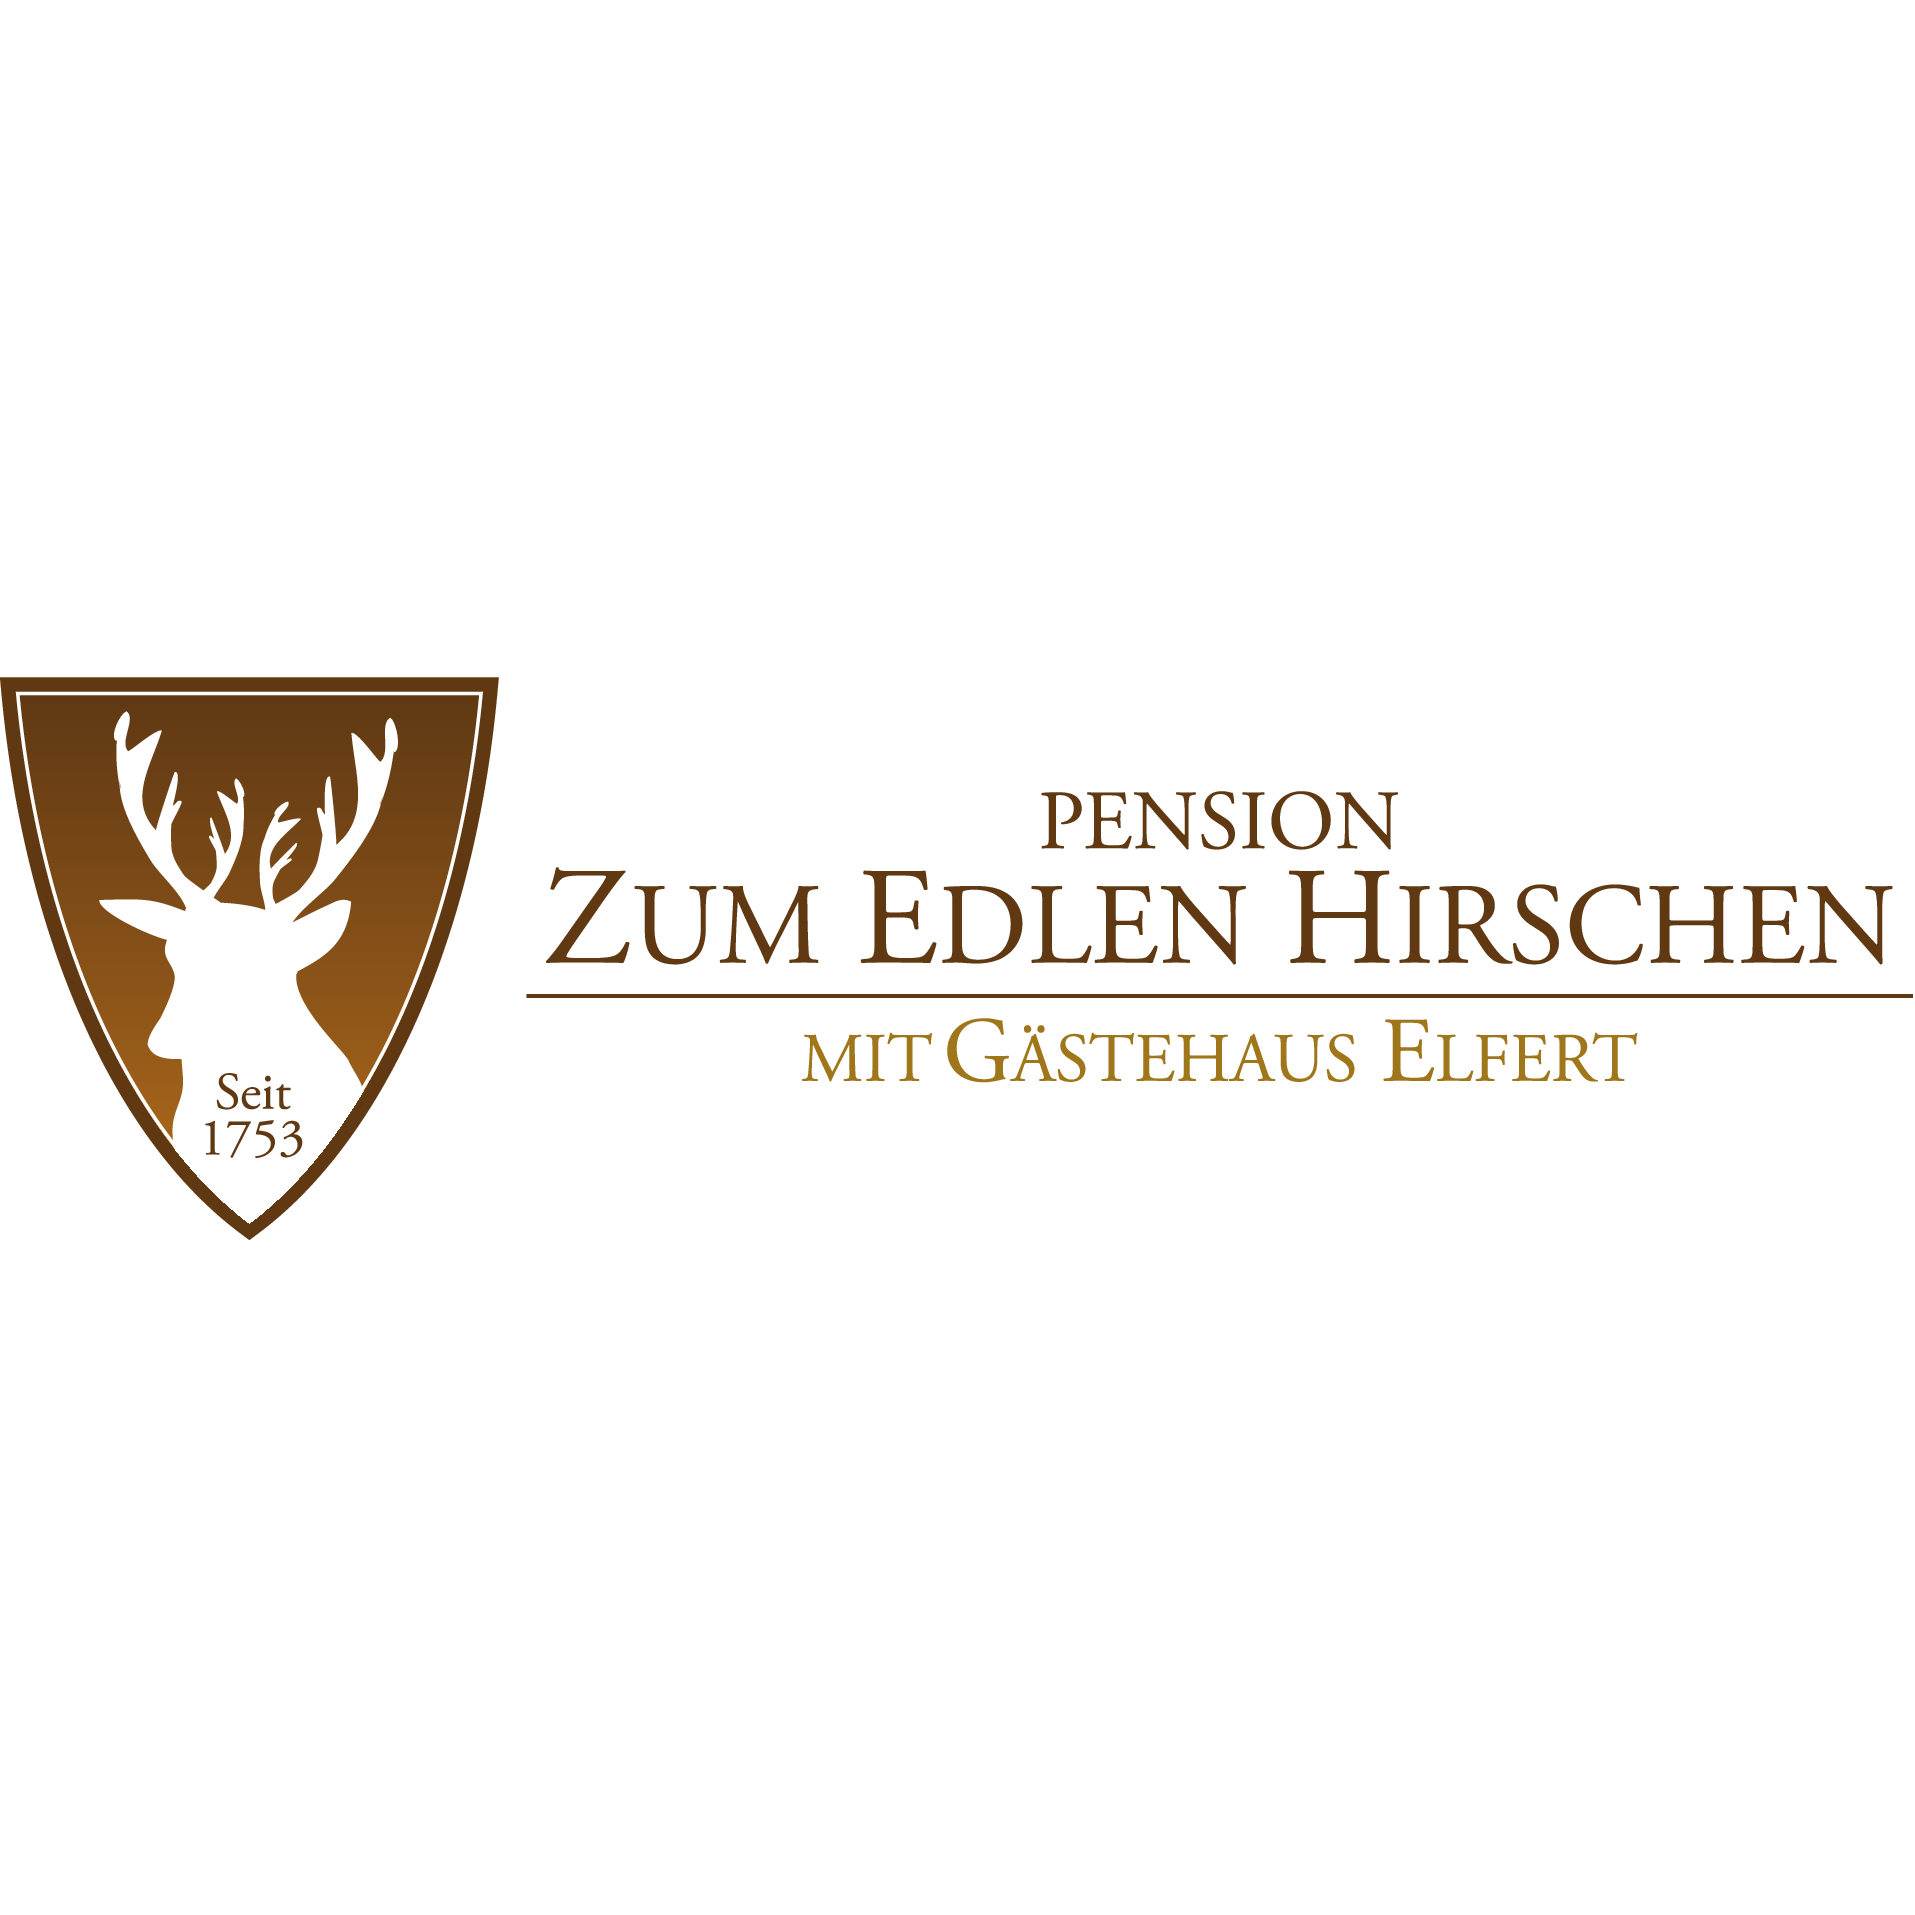 Pension Zum Edlen Hirschen in Bayreuth - Logo